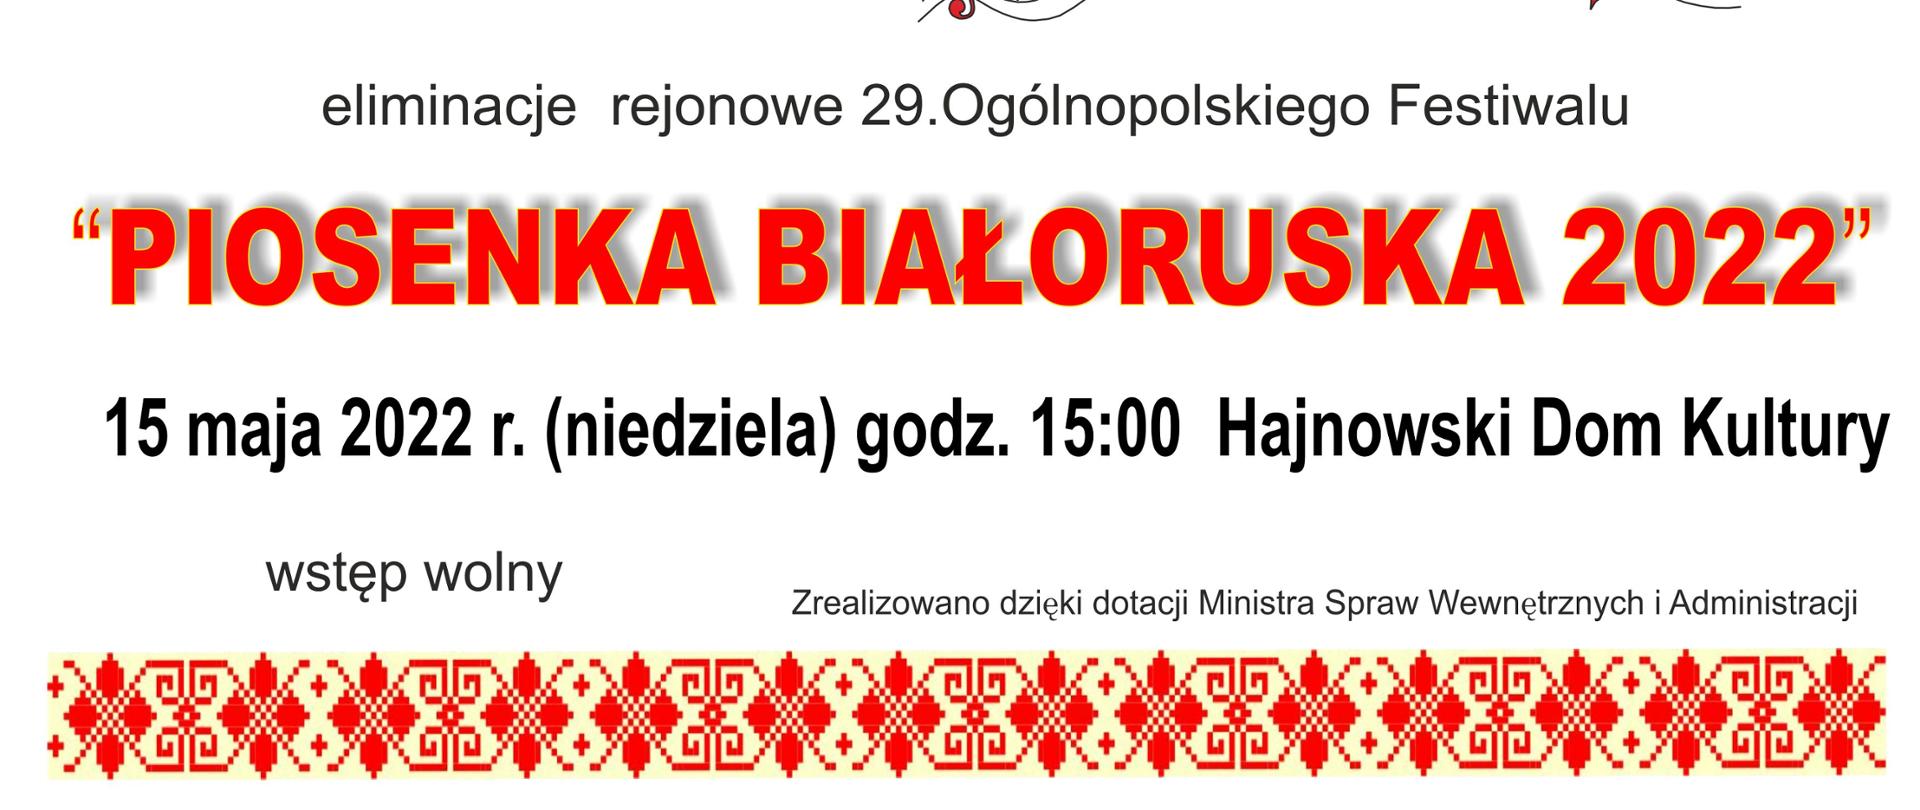 Plakat promujący wydarzenie. Na białym tle wzory białoruskie wraz z napisami